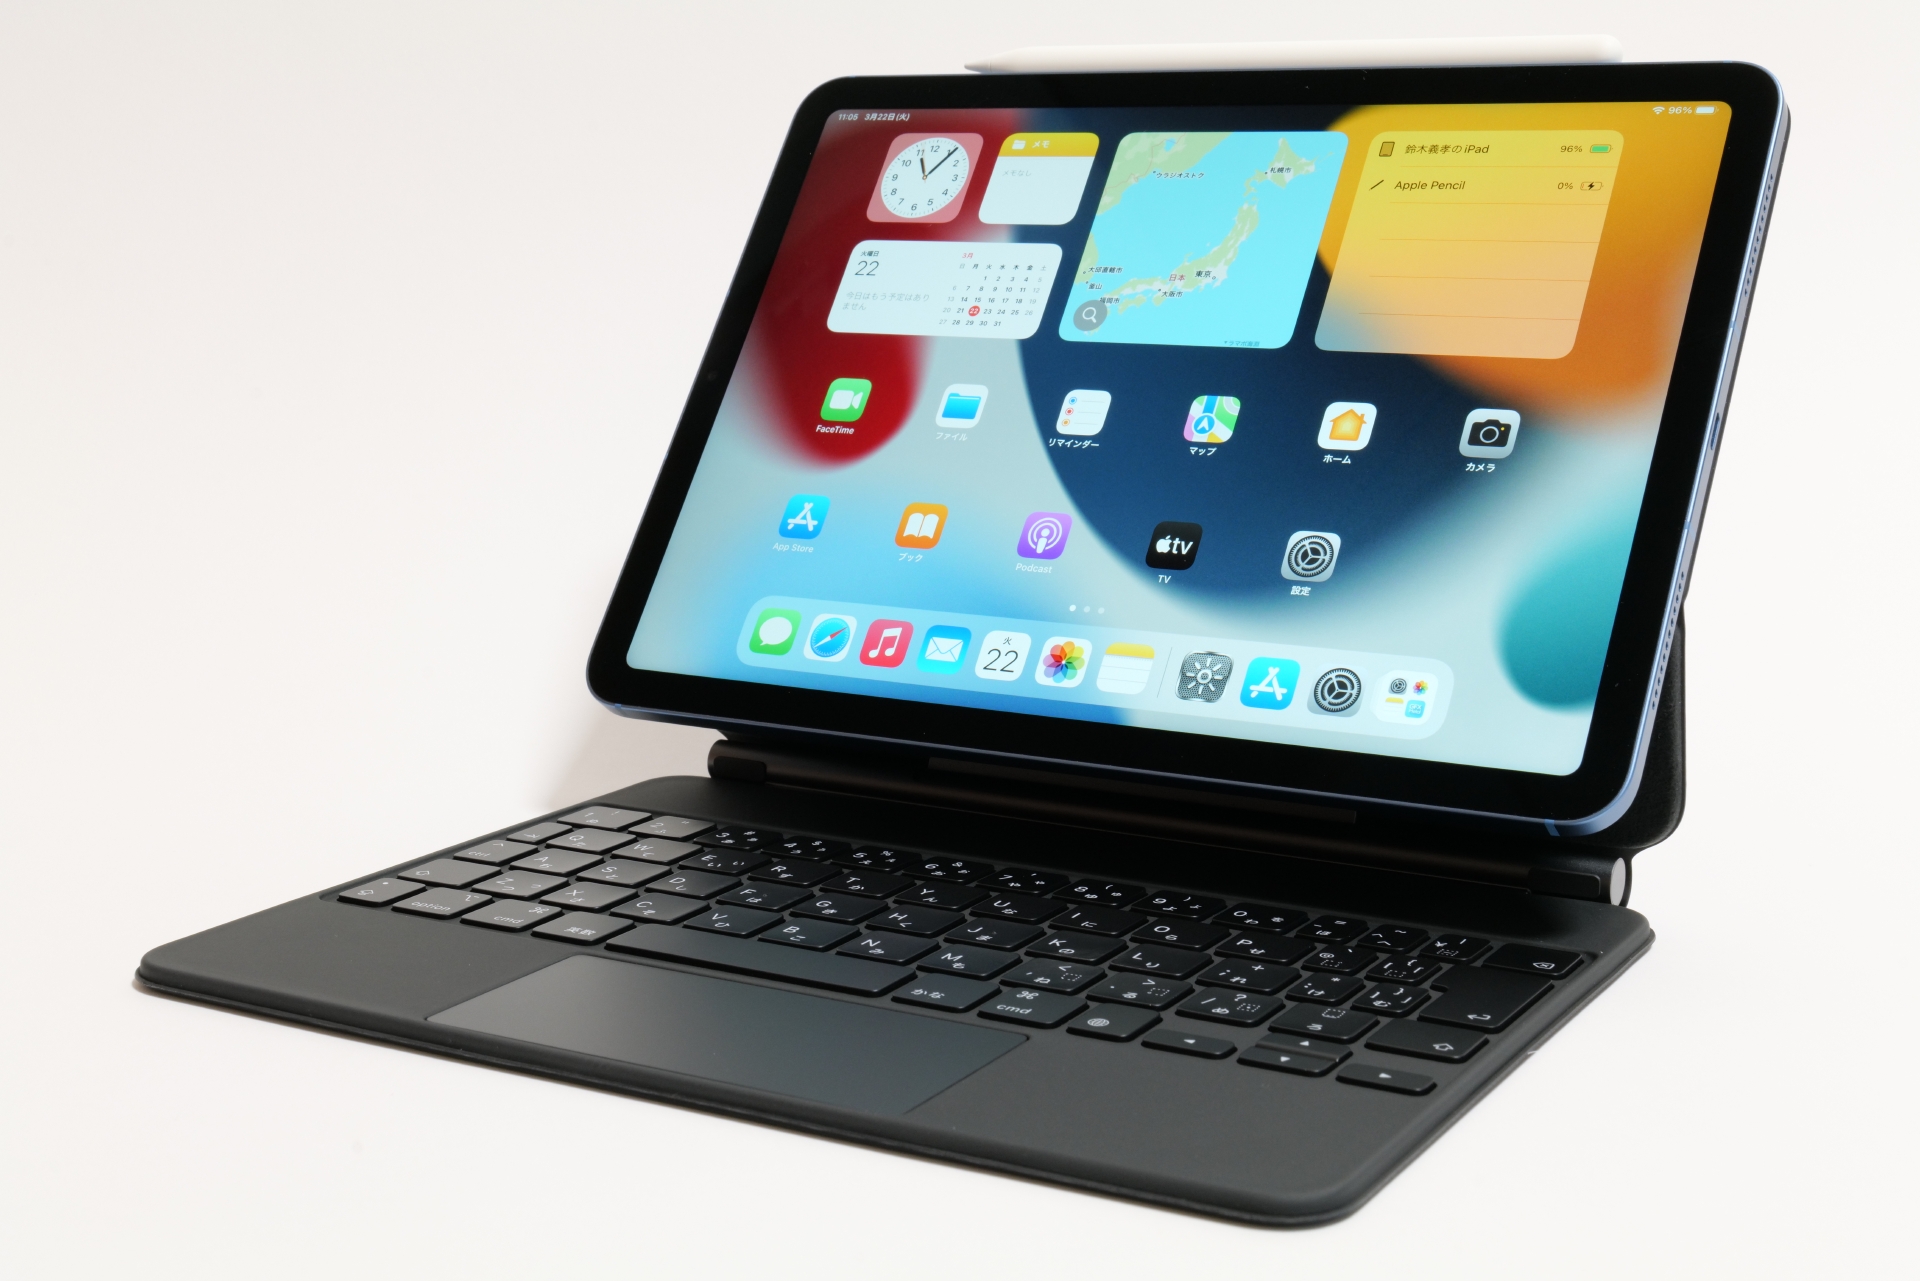 Hothotレビュー】iPad Air(第5世代)は、機能は割り切っても処理性能にこだわりたい人に絶好の1台 - PC Watch